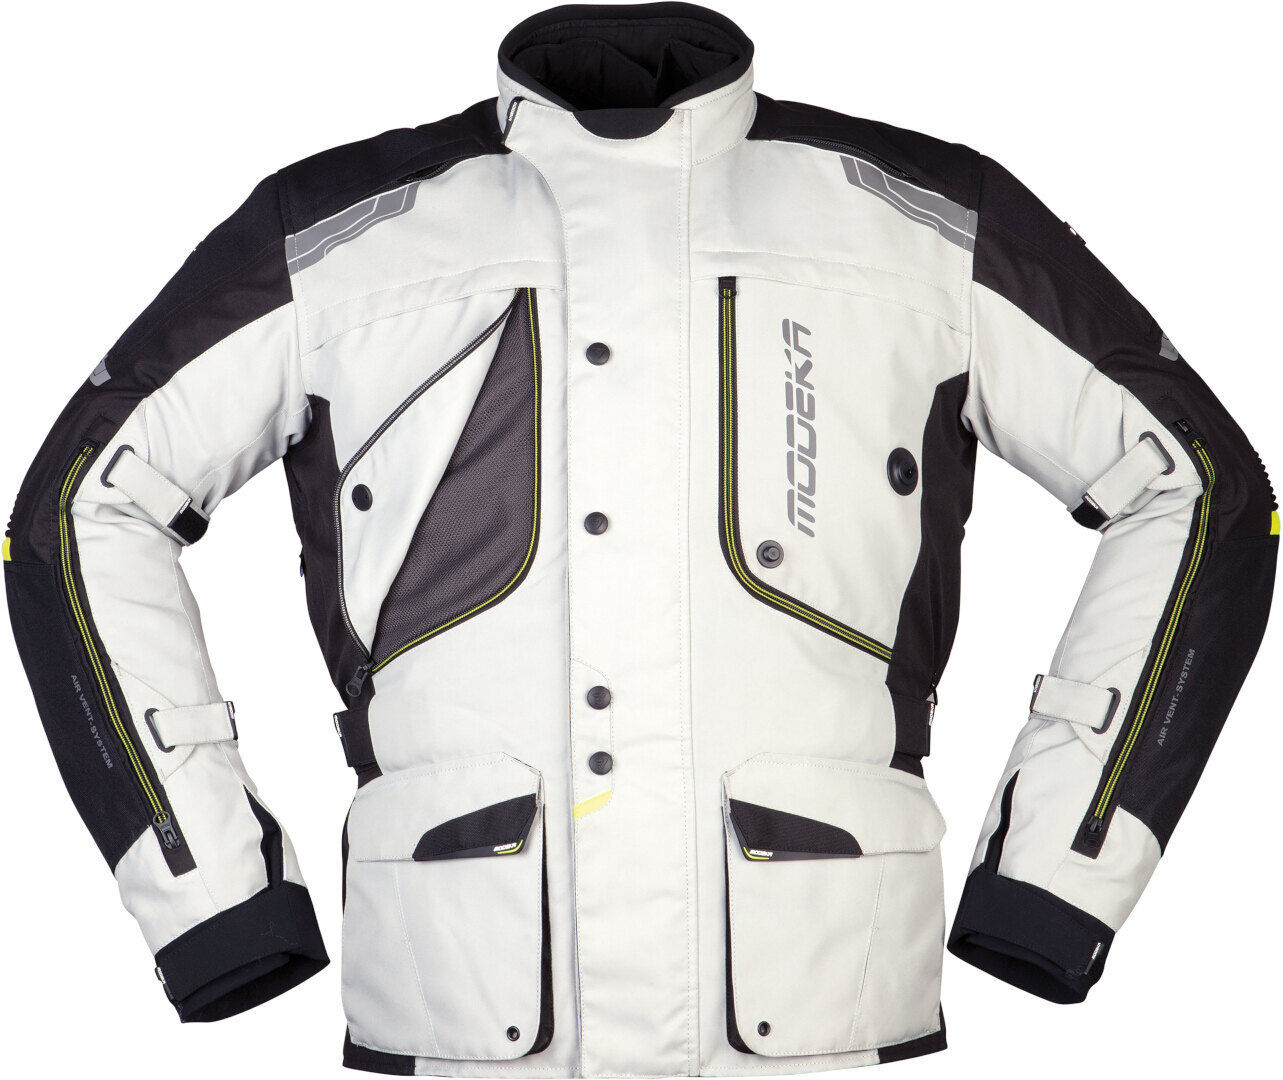 Modeka Aeris Motorsykkel tekstil jakke XL Svart Grå